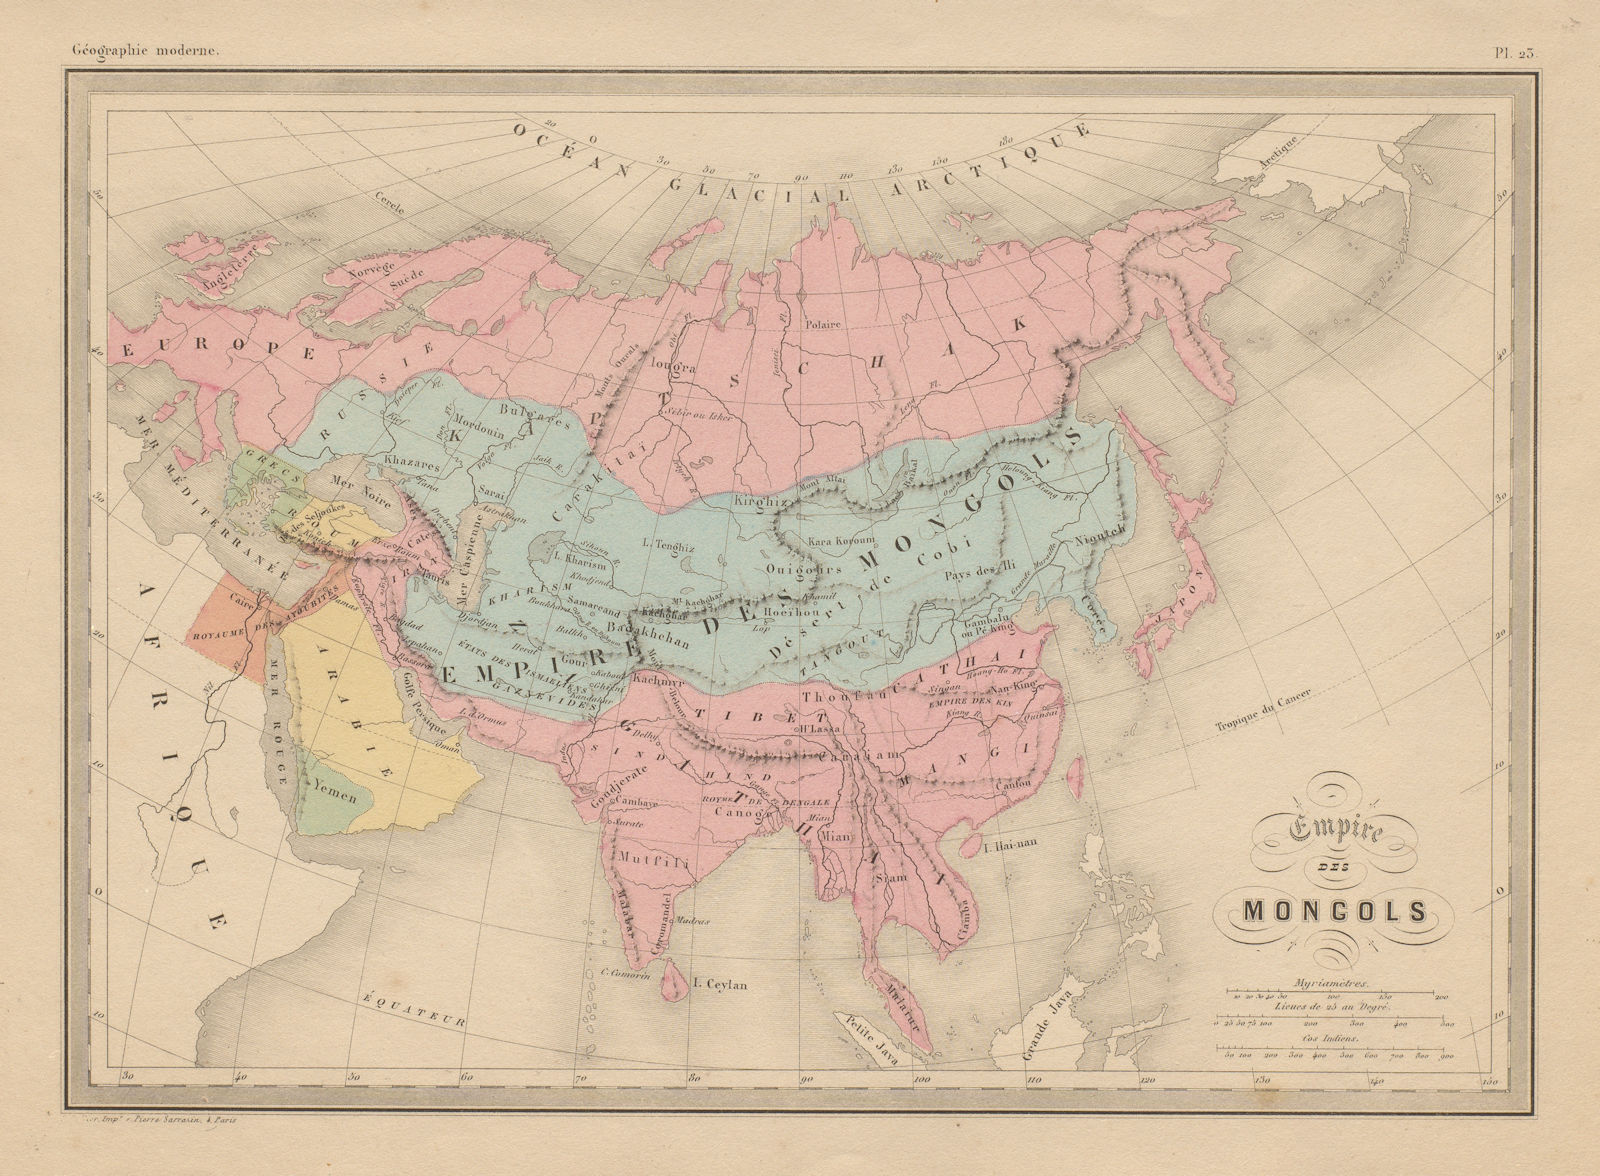 Empire des Mongols. Asia. MALTE-BRUN c1871 old antique vintage map plan chart